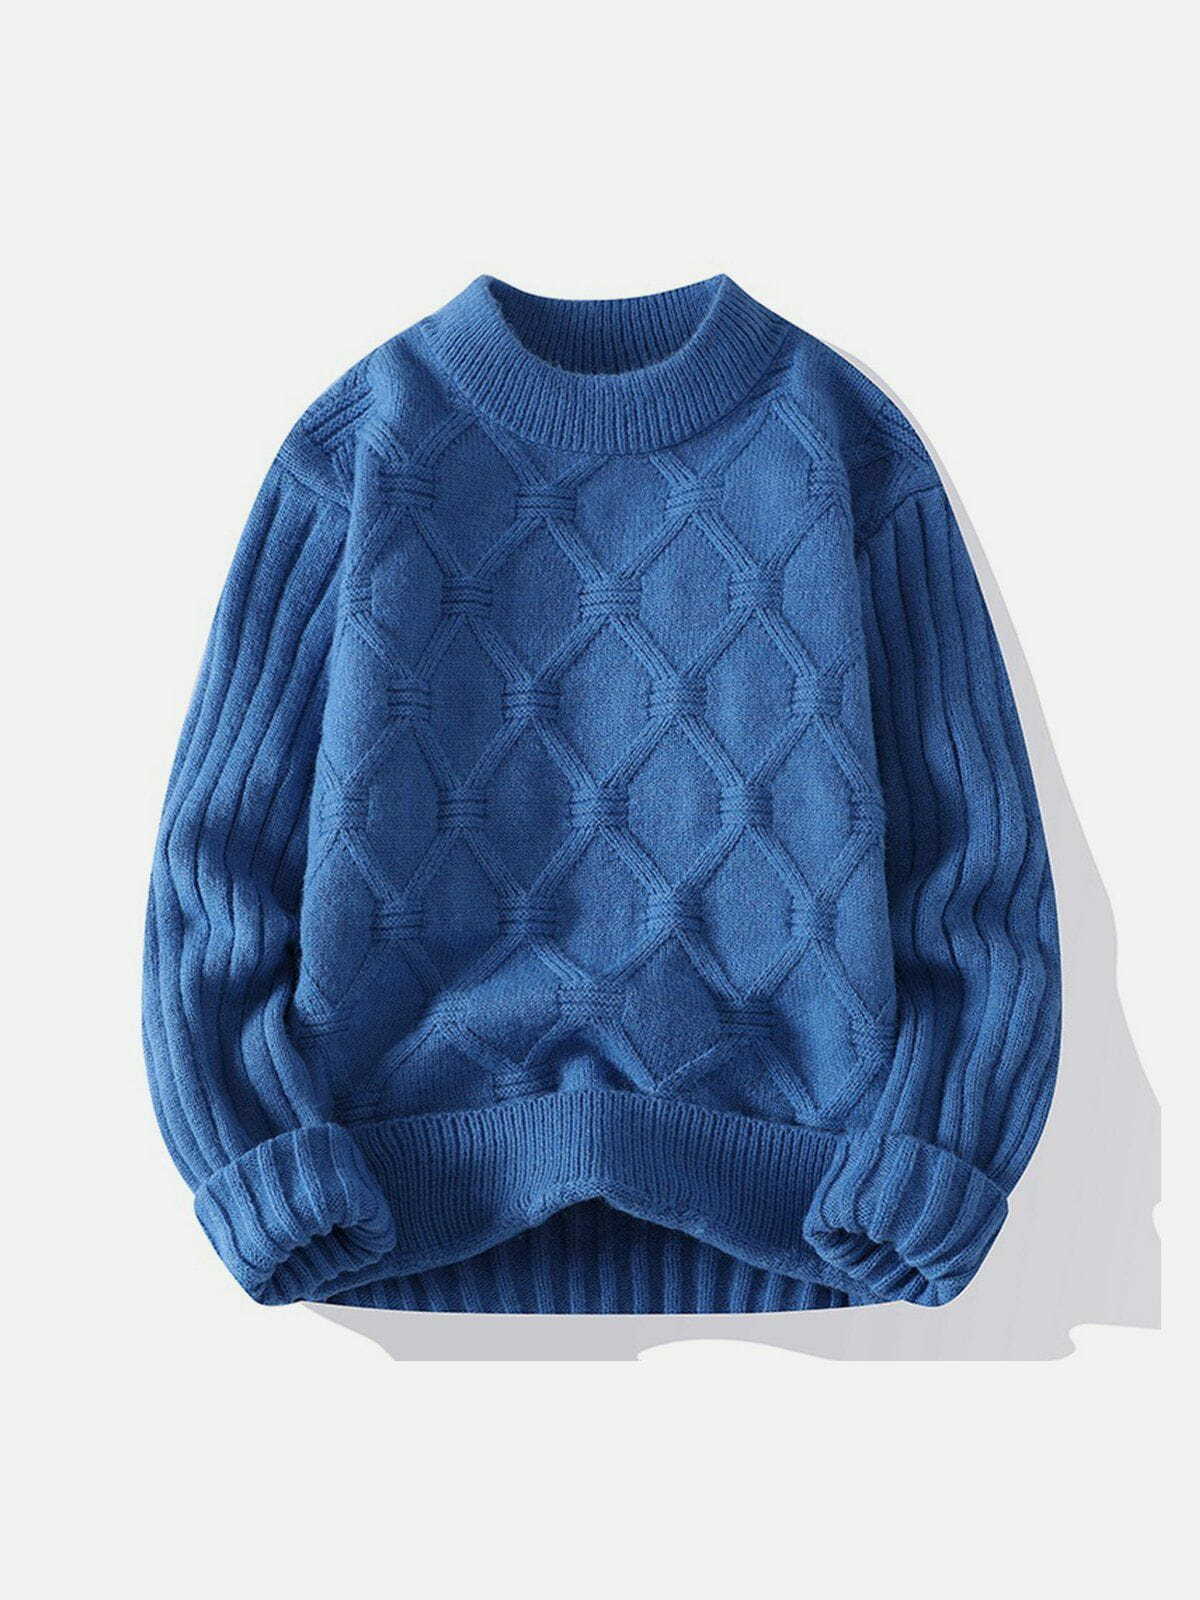 net jacquard sweater sleek & edgy streetwear 6749